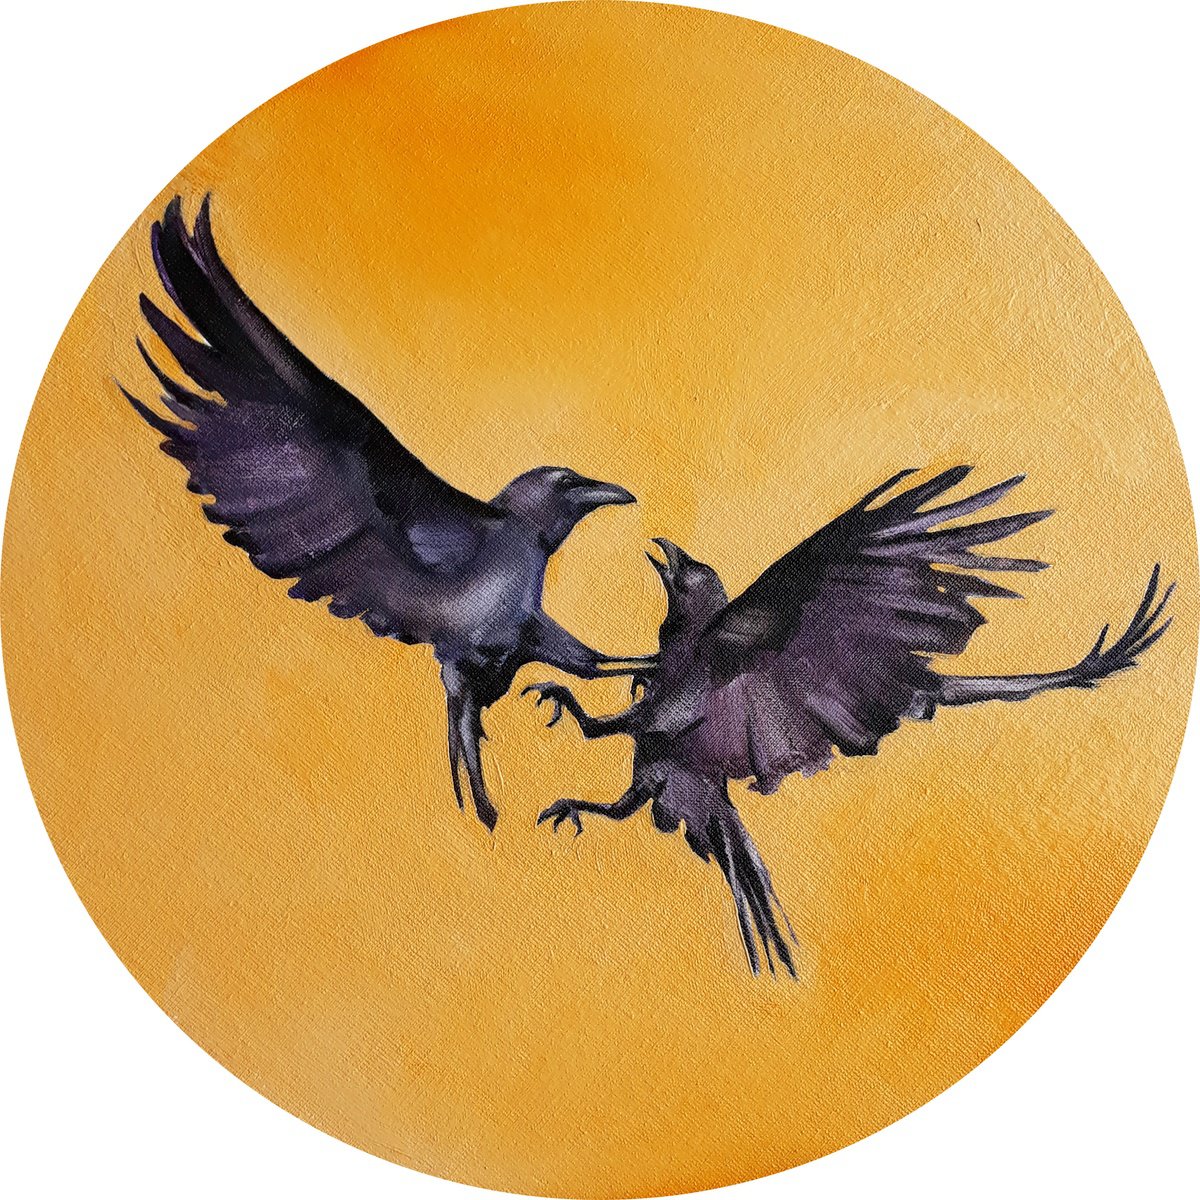 Two Ravens by Kateryna Somyk